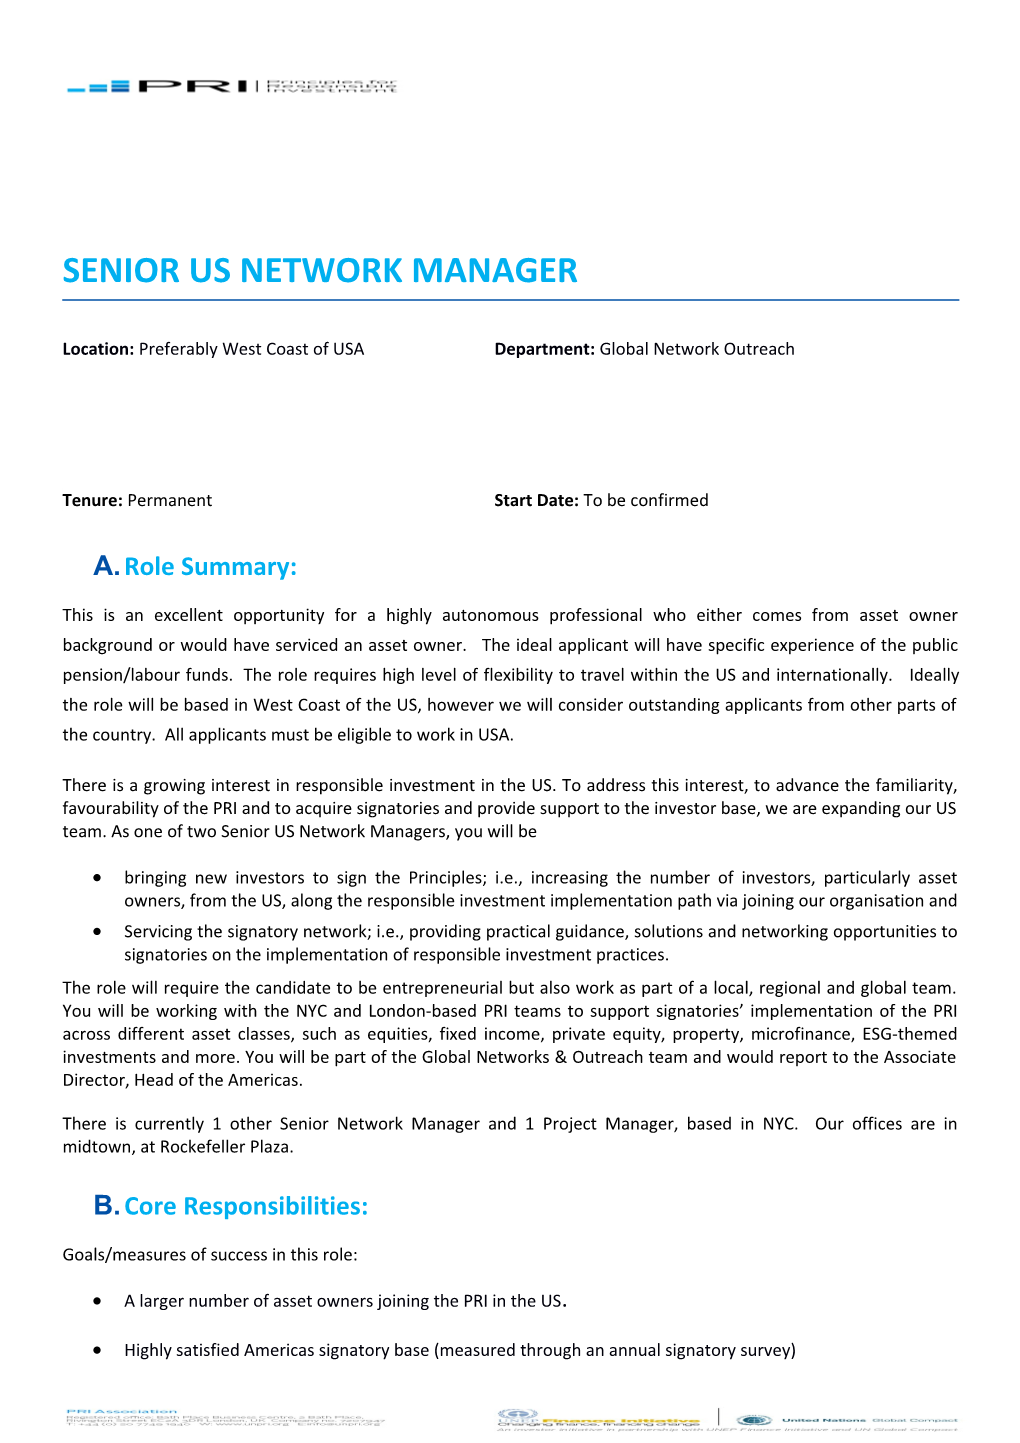 Senior Us Network Manager